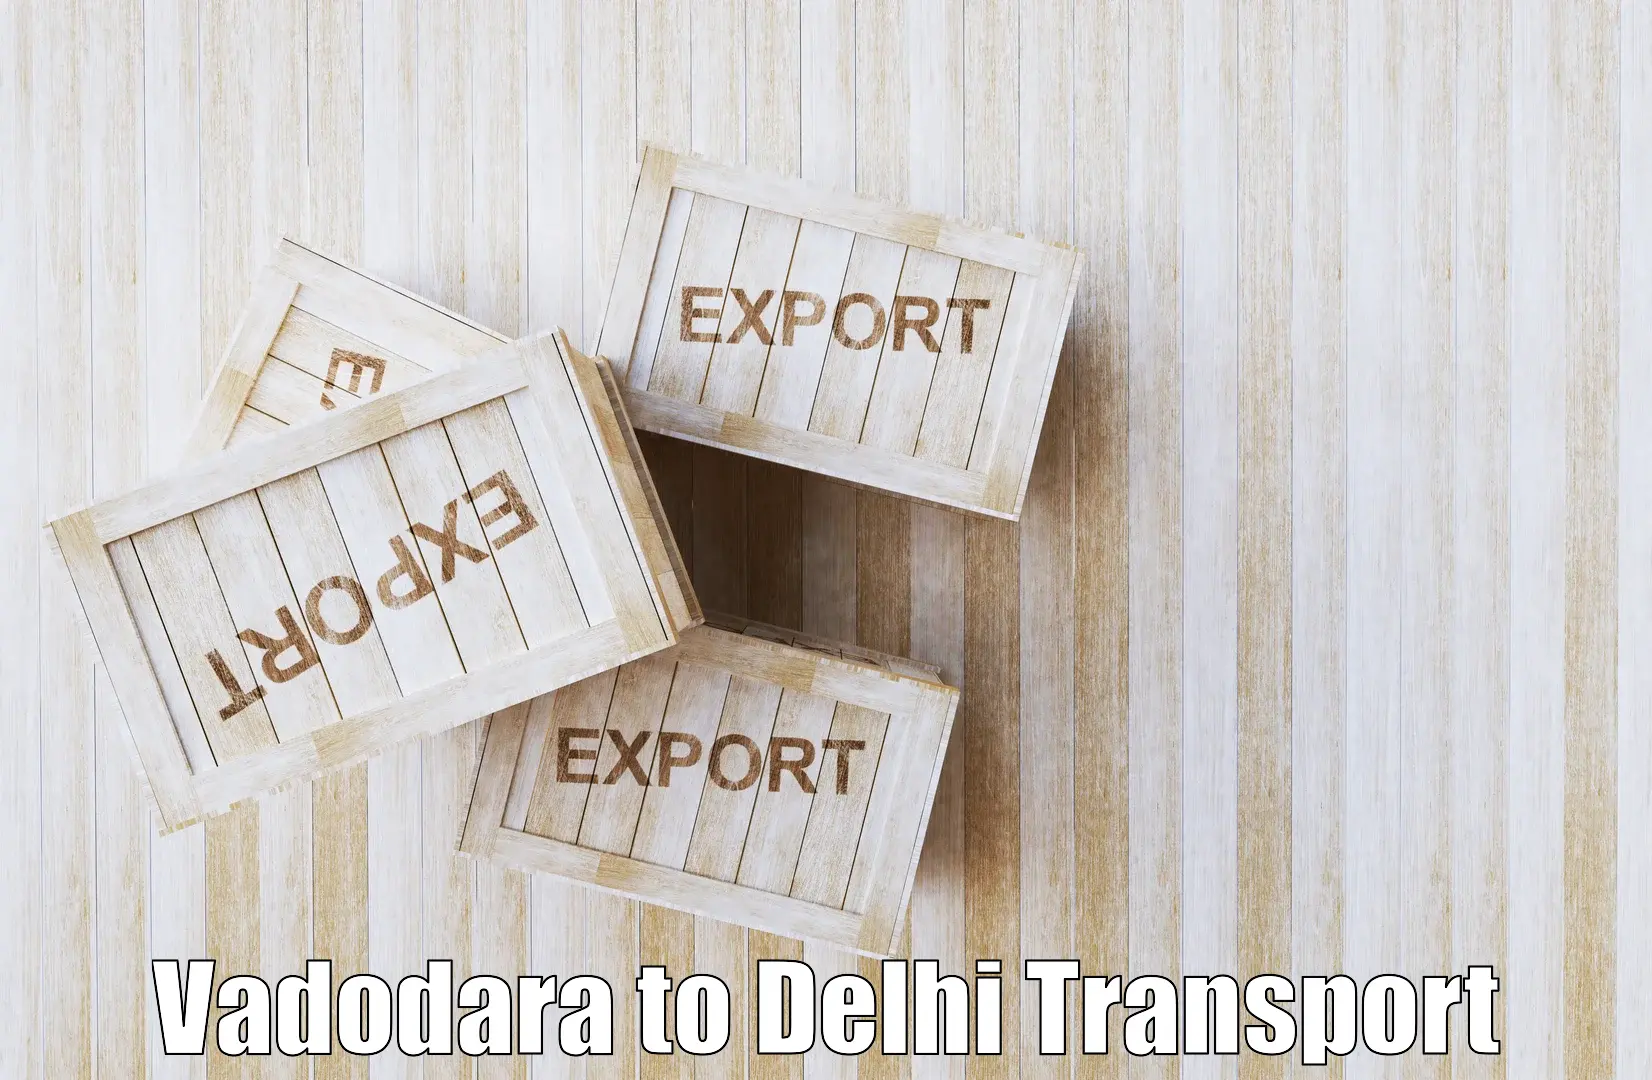 Express transport services in Vadodara to Jawaharlal Nehru University New Delhi